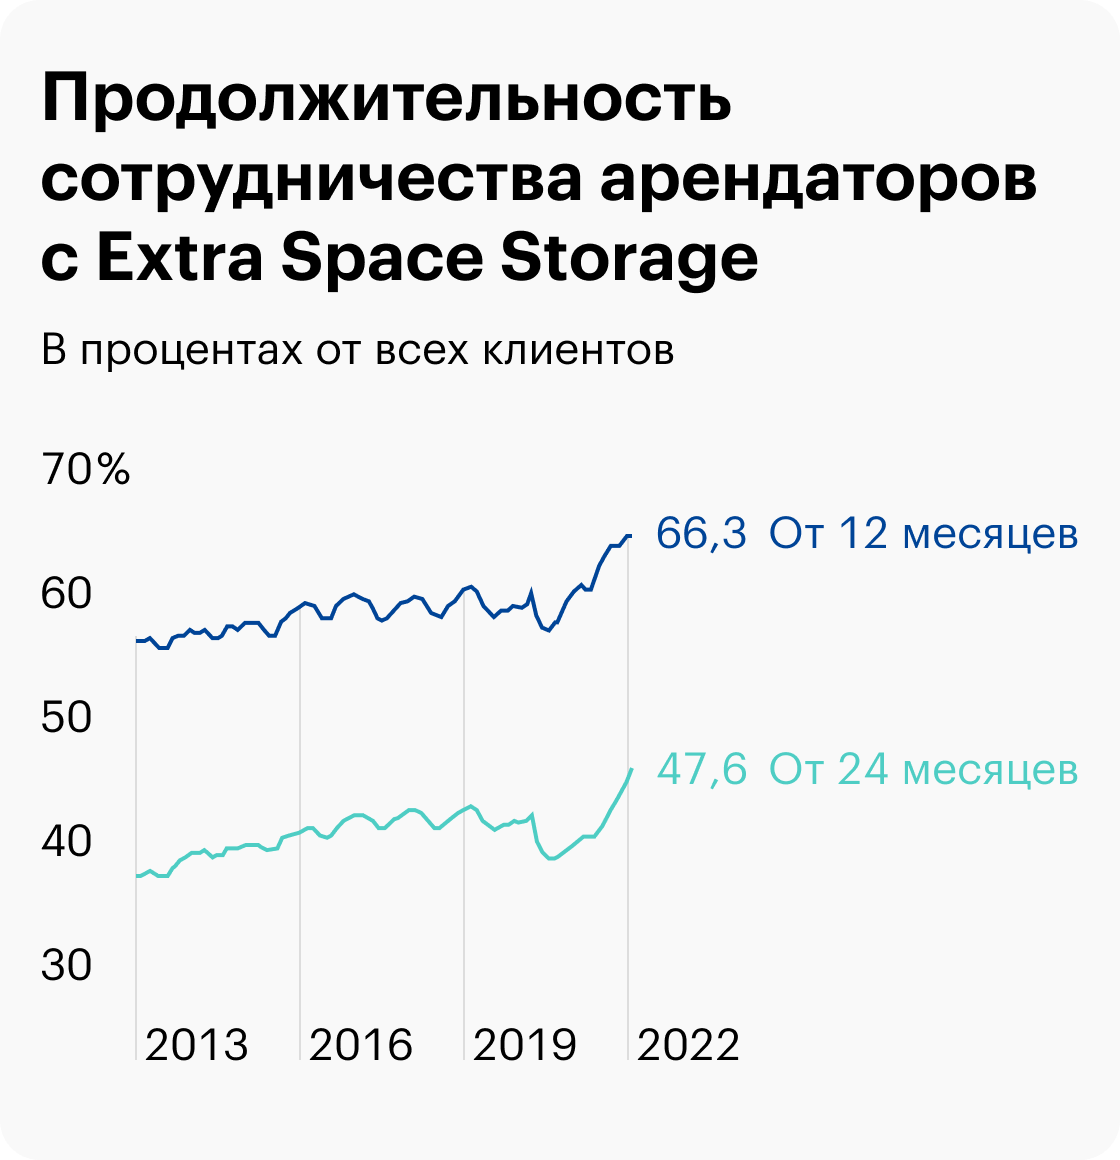 Источник: презентация Extra Space Storage, слайд&nbsp;27